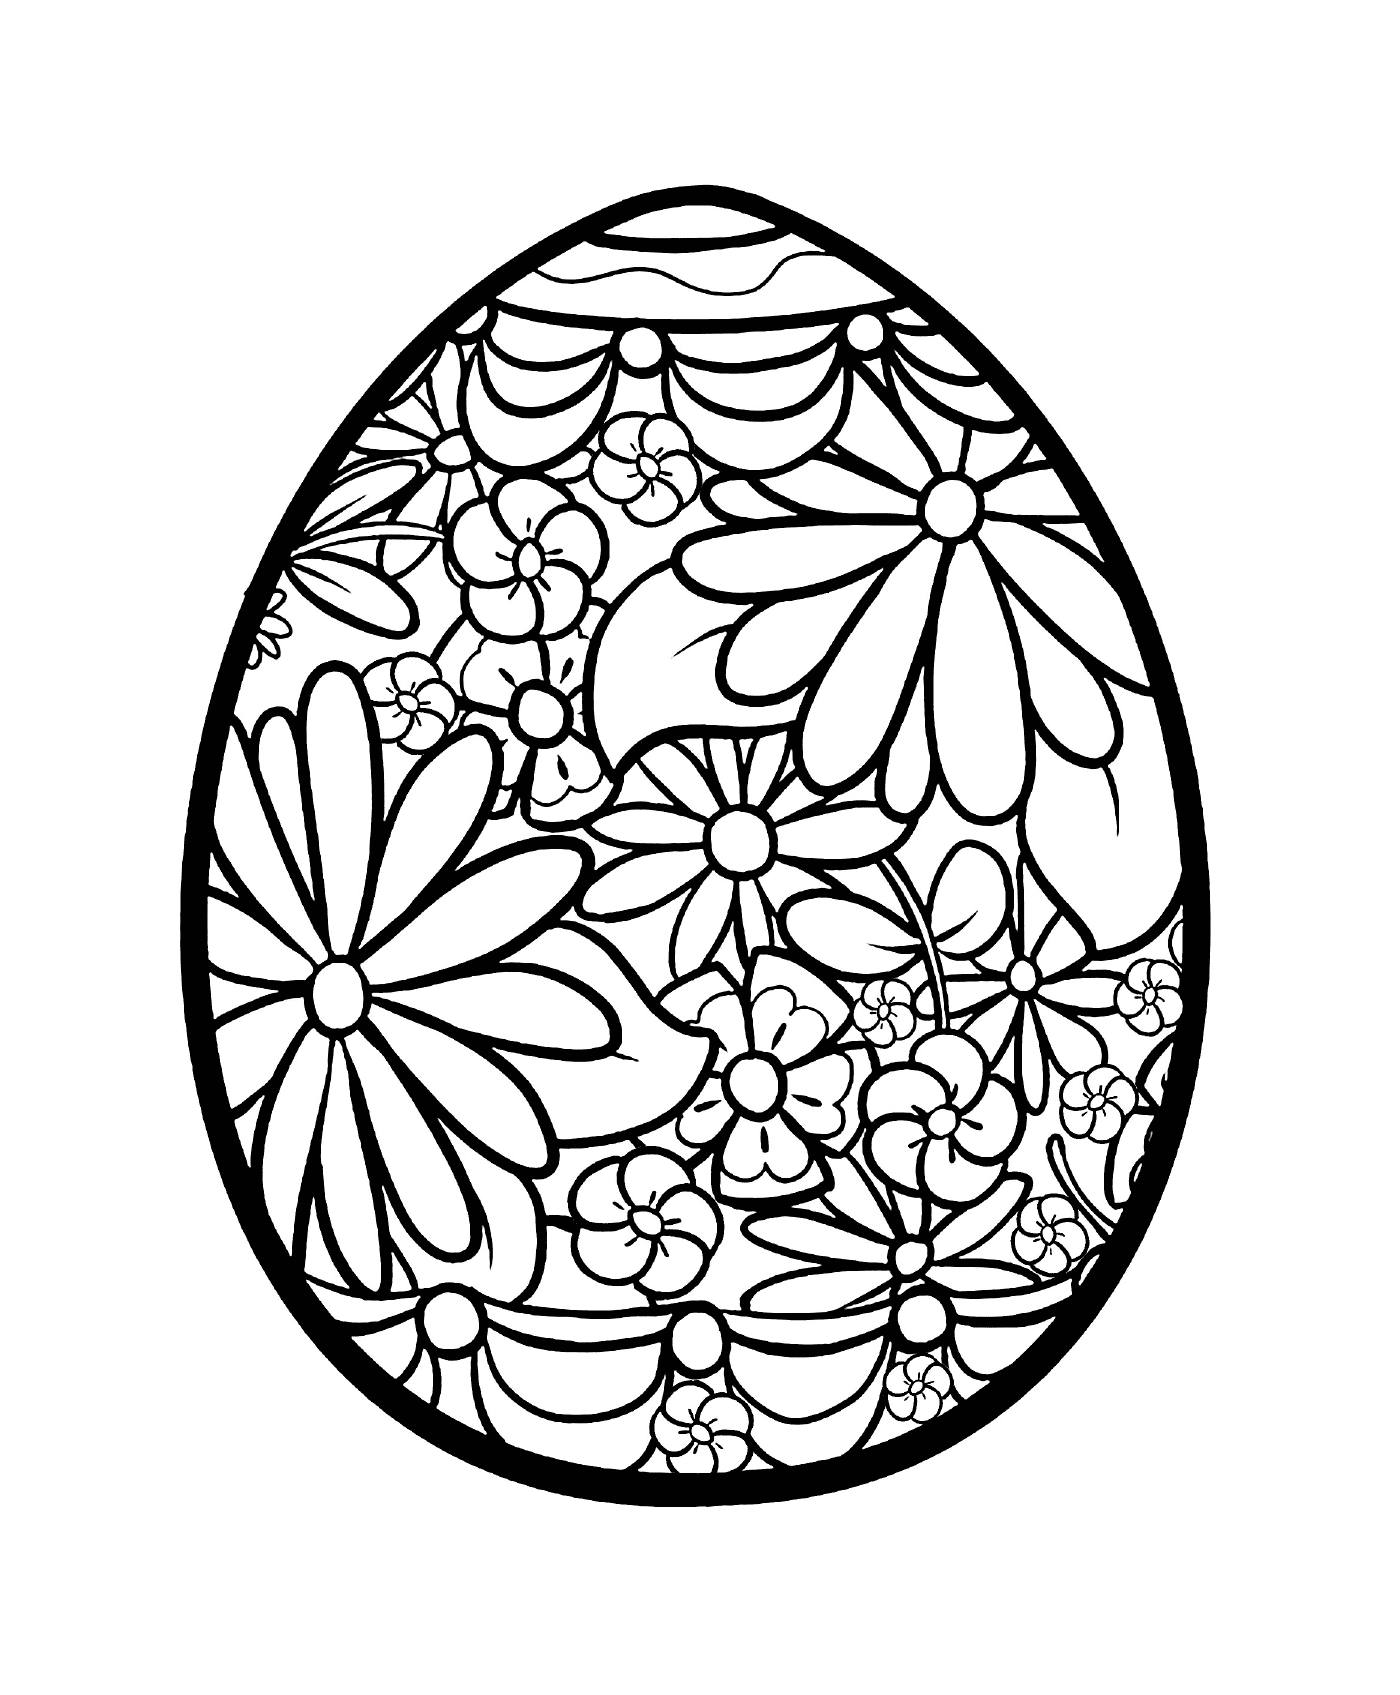  Uovo di Pasqua 2019 con fiori 